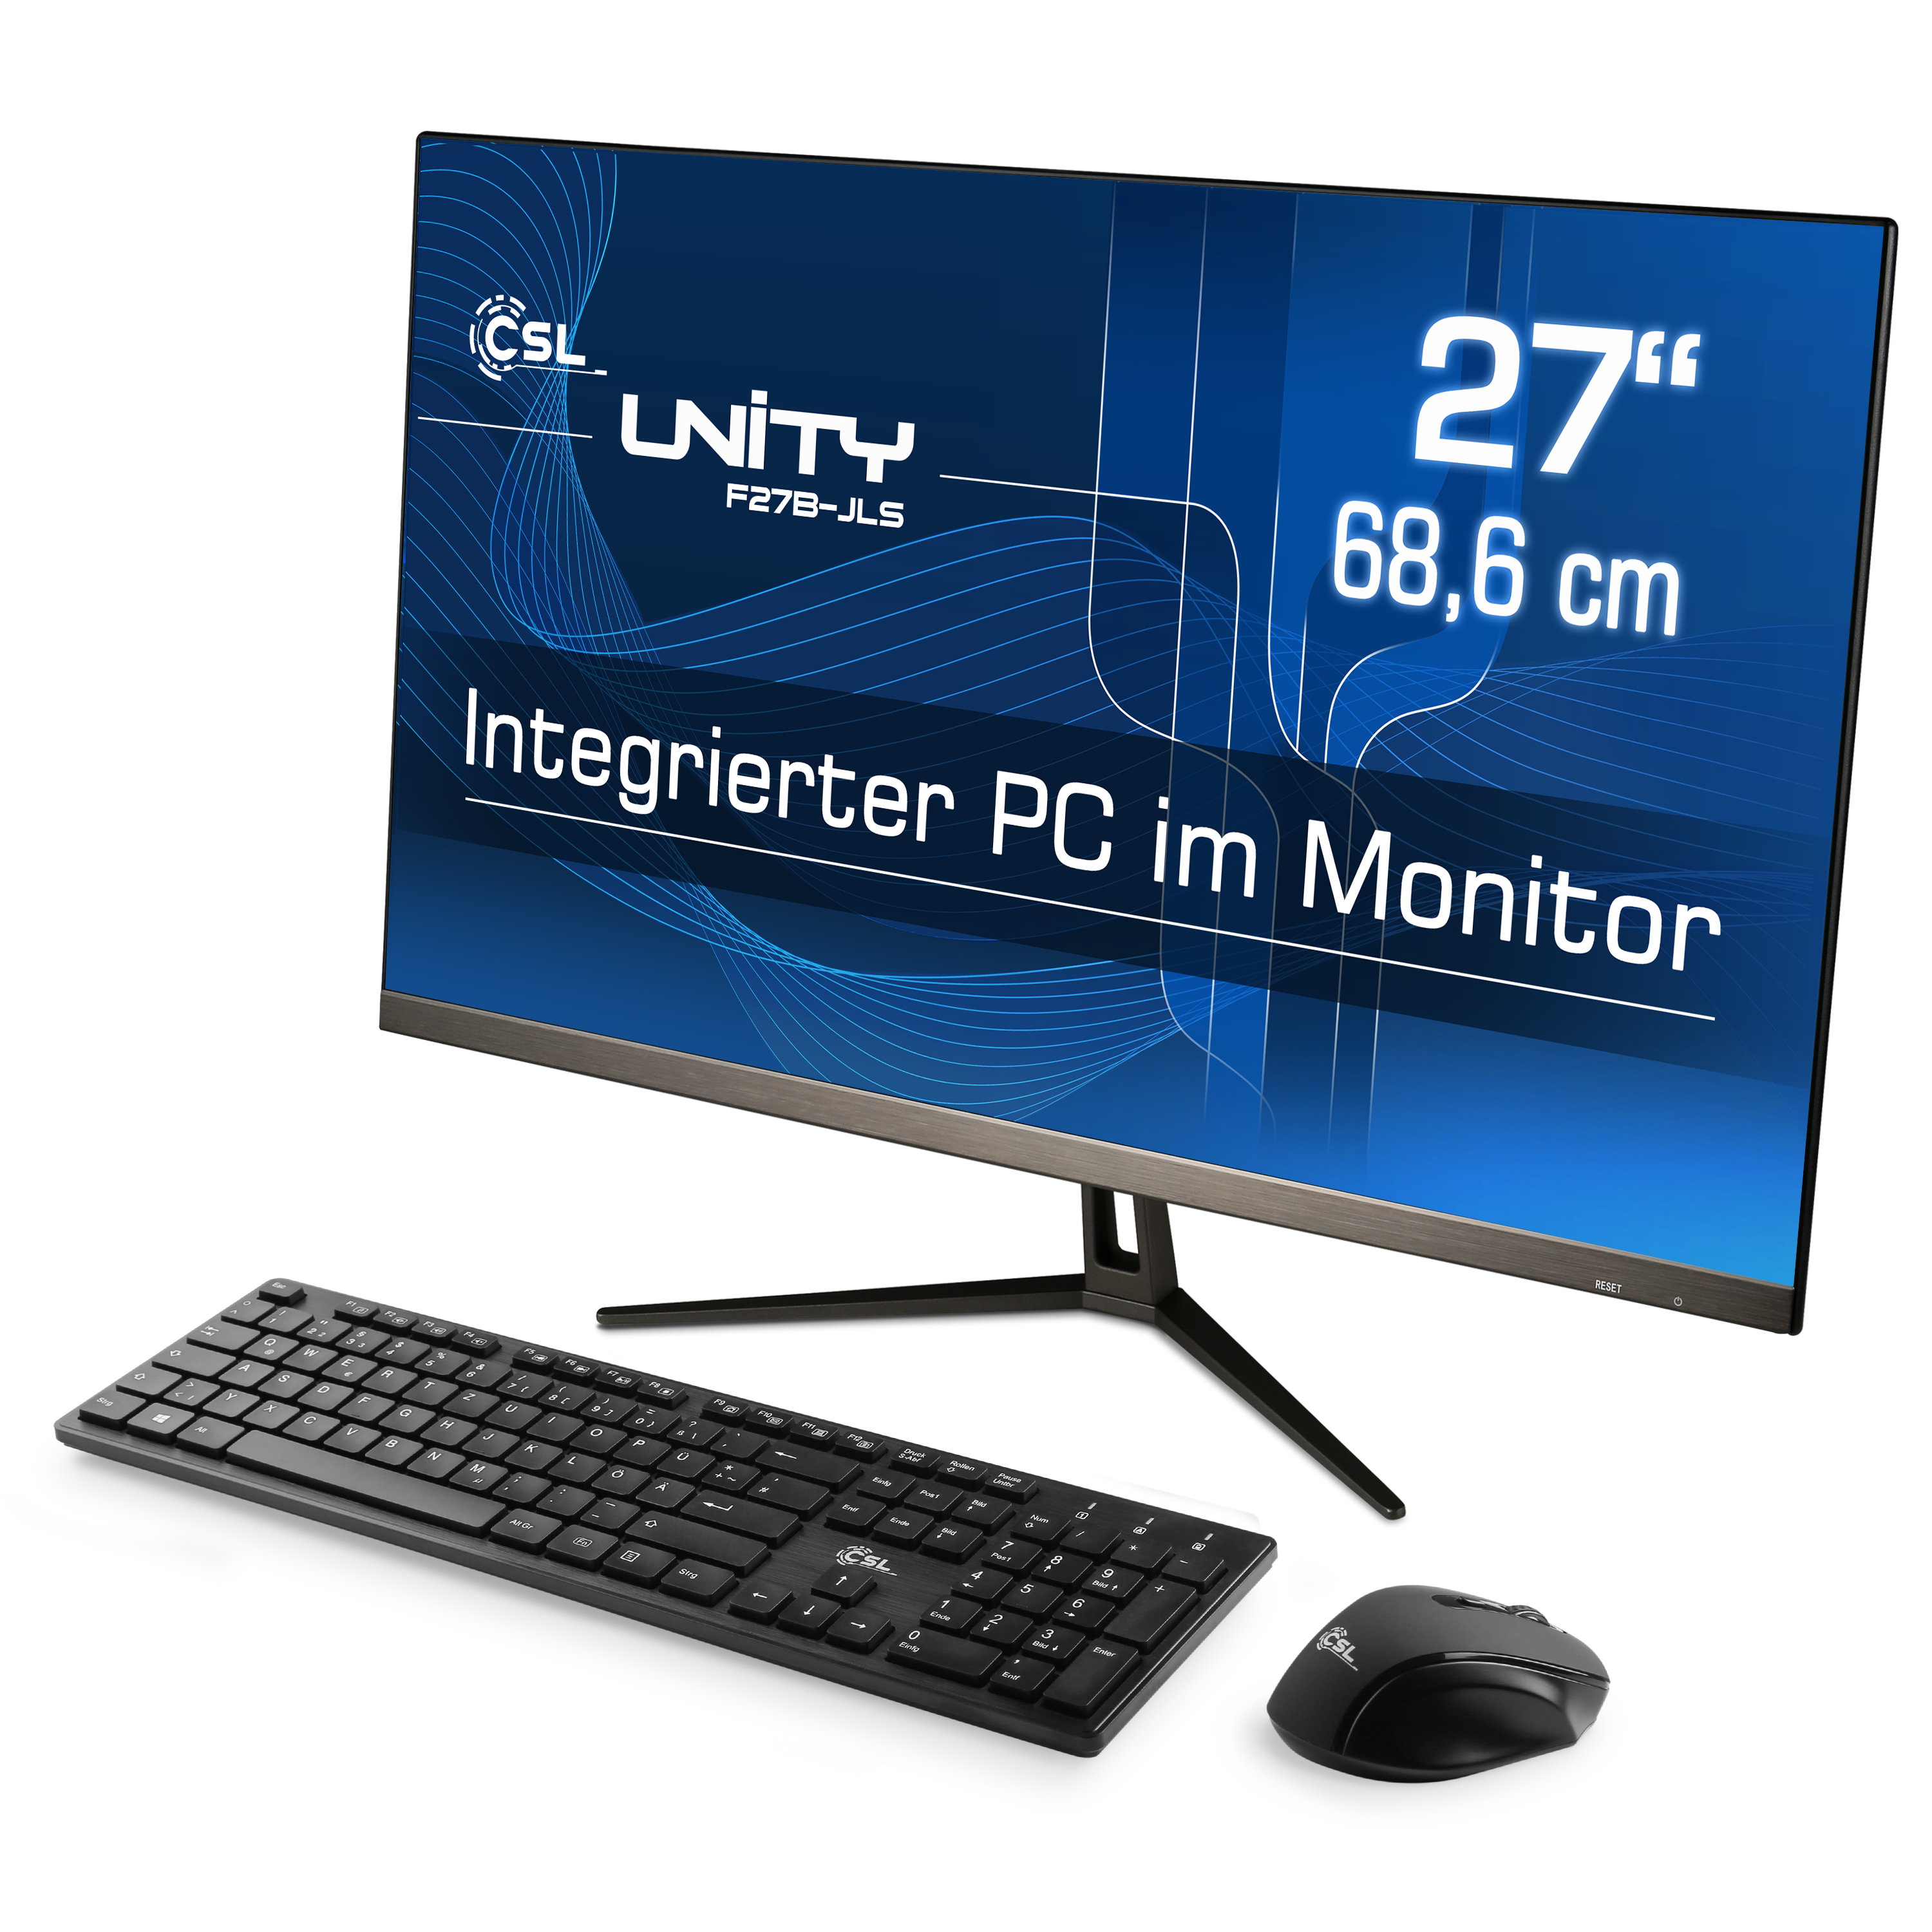 CSL Unity SSD, Pro, GB RAM / 1000 RAM, 27 16 schwarz Zoll 10 Win All-in-One-PC UHD 16 Intel® mit GB GB Display, GB Graphics, / 1000 / F27B-JLS